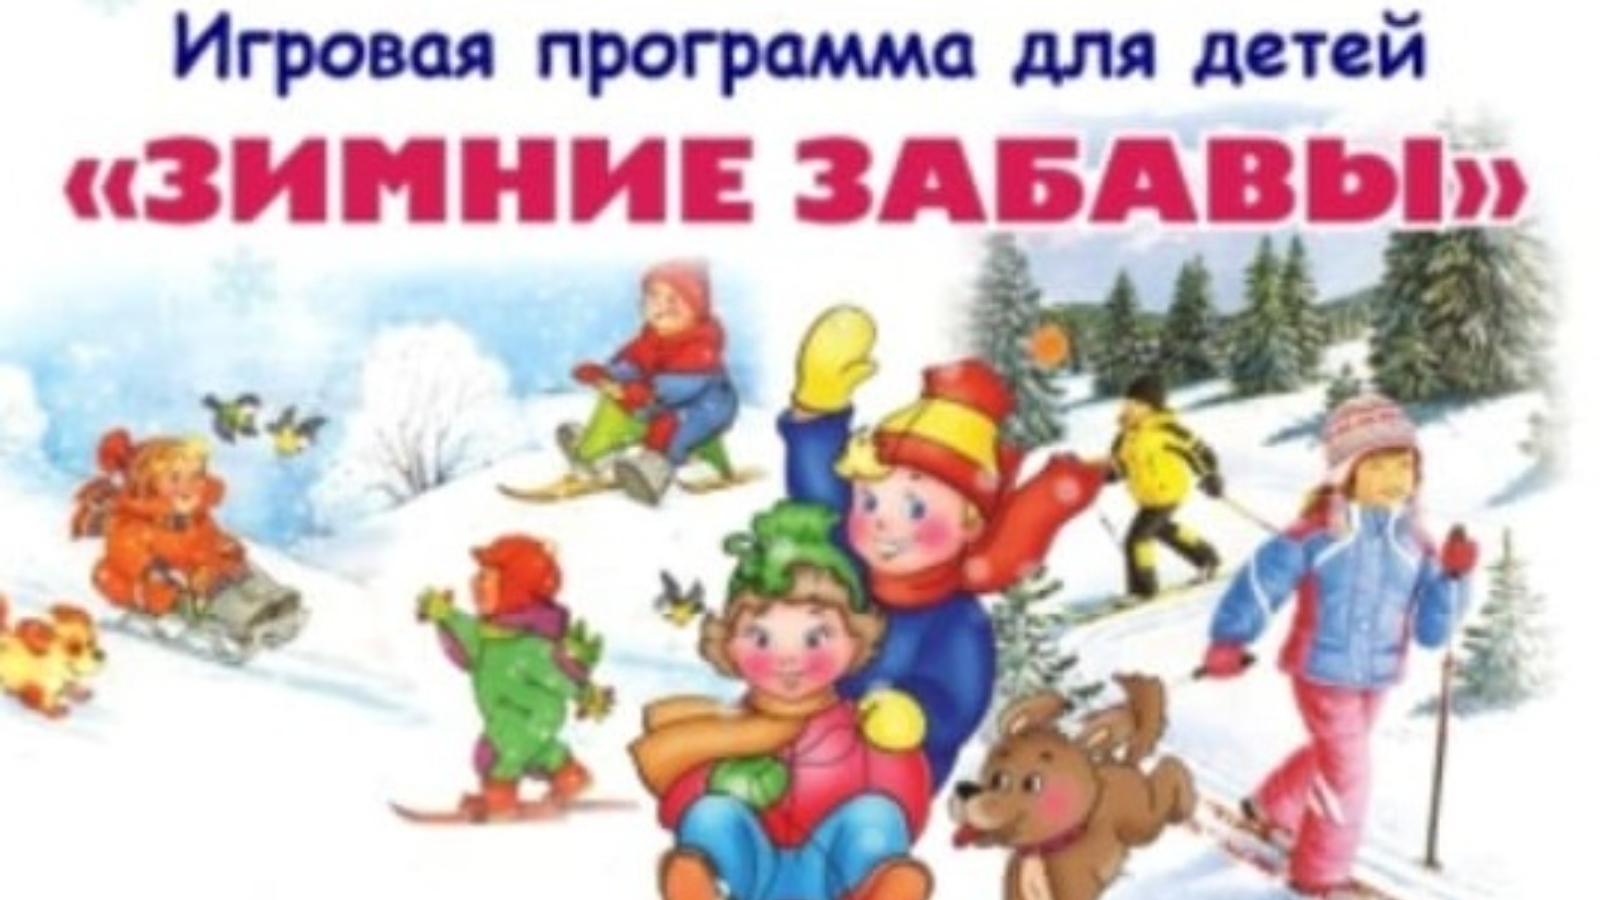 Зимние забавы картинки для детей. Зимние игры для детей. Развлечения зимние в детском саду. Зимние прогулки с детьми. Зимние забавы для детей на улице.